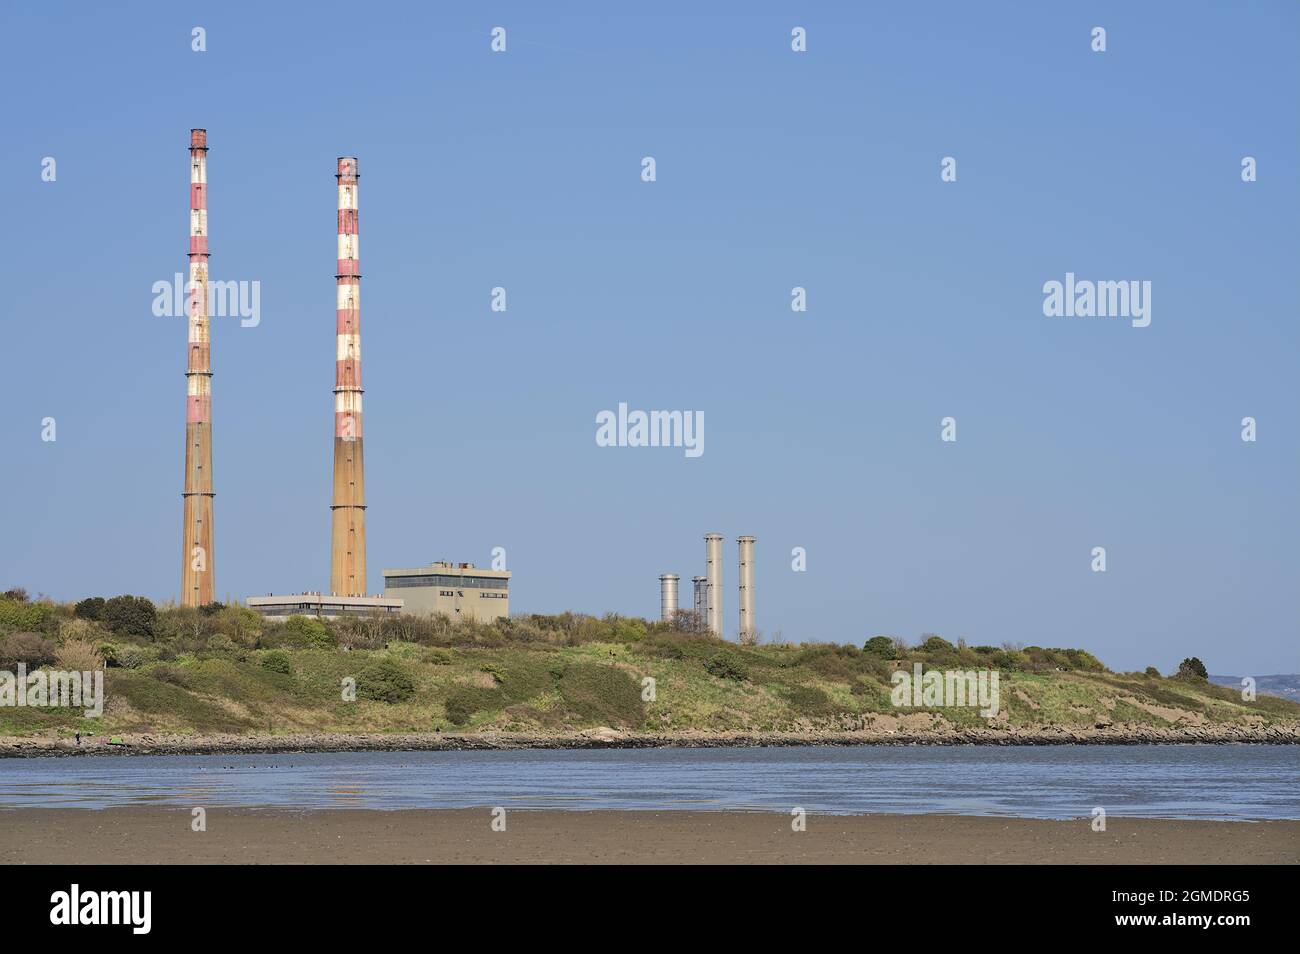 Gros plan vue imprenable sur les cheminées emblématiques de la centrale électrique de Poolbeg et de la station de Poolbeg CCGT, dans un ciel bleu clair, depuis la plage de Sandymount, Dublin Banque D'Images